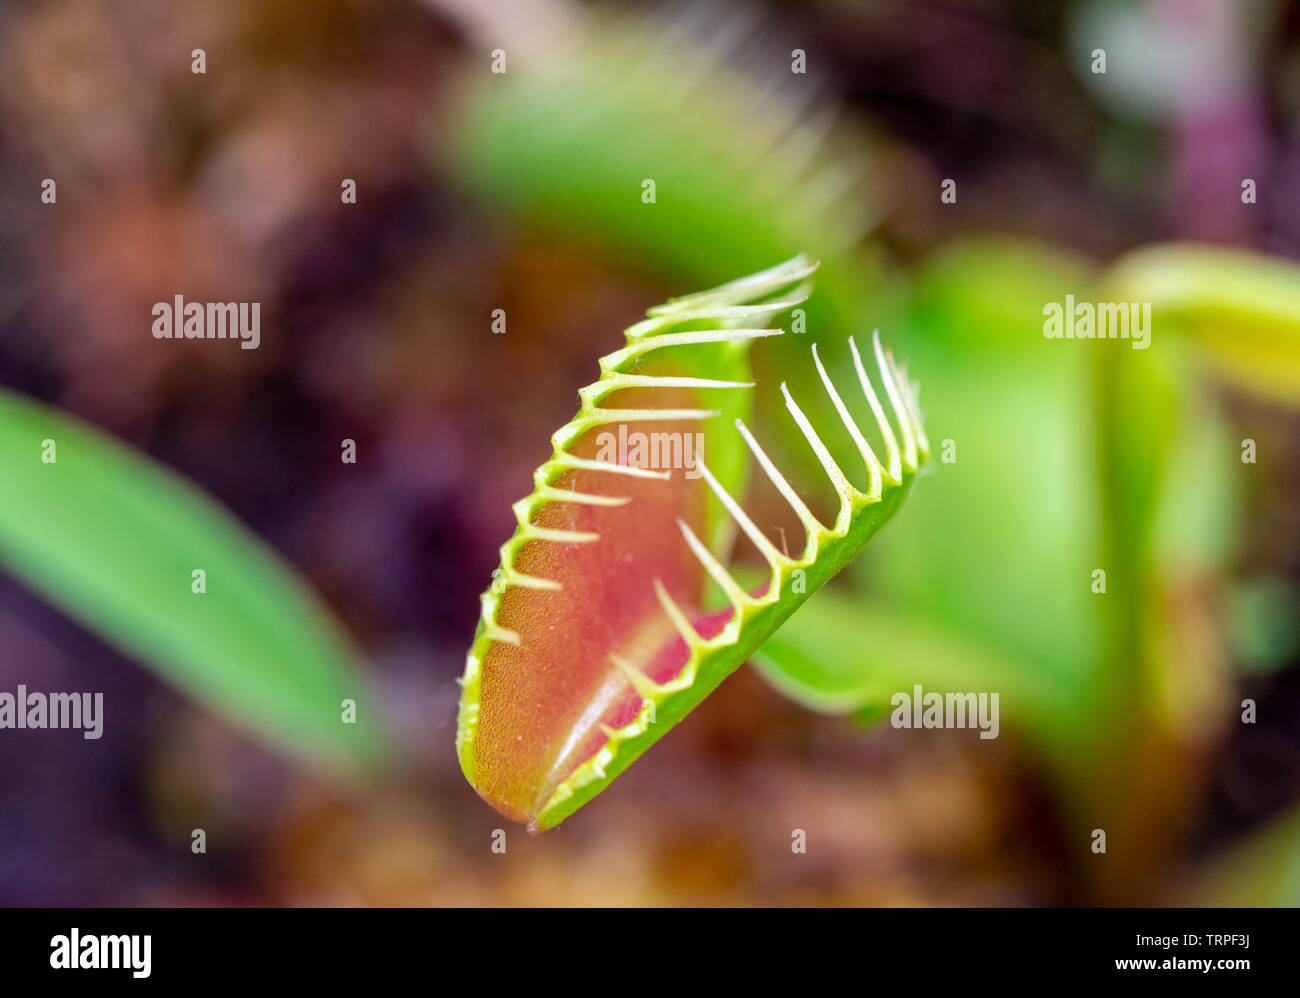 venus flytrap carnivorous plant close up detail Stock Photo